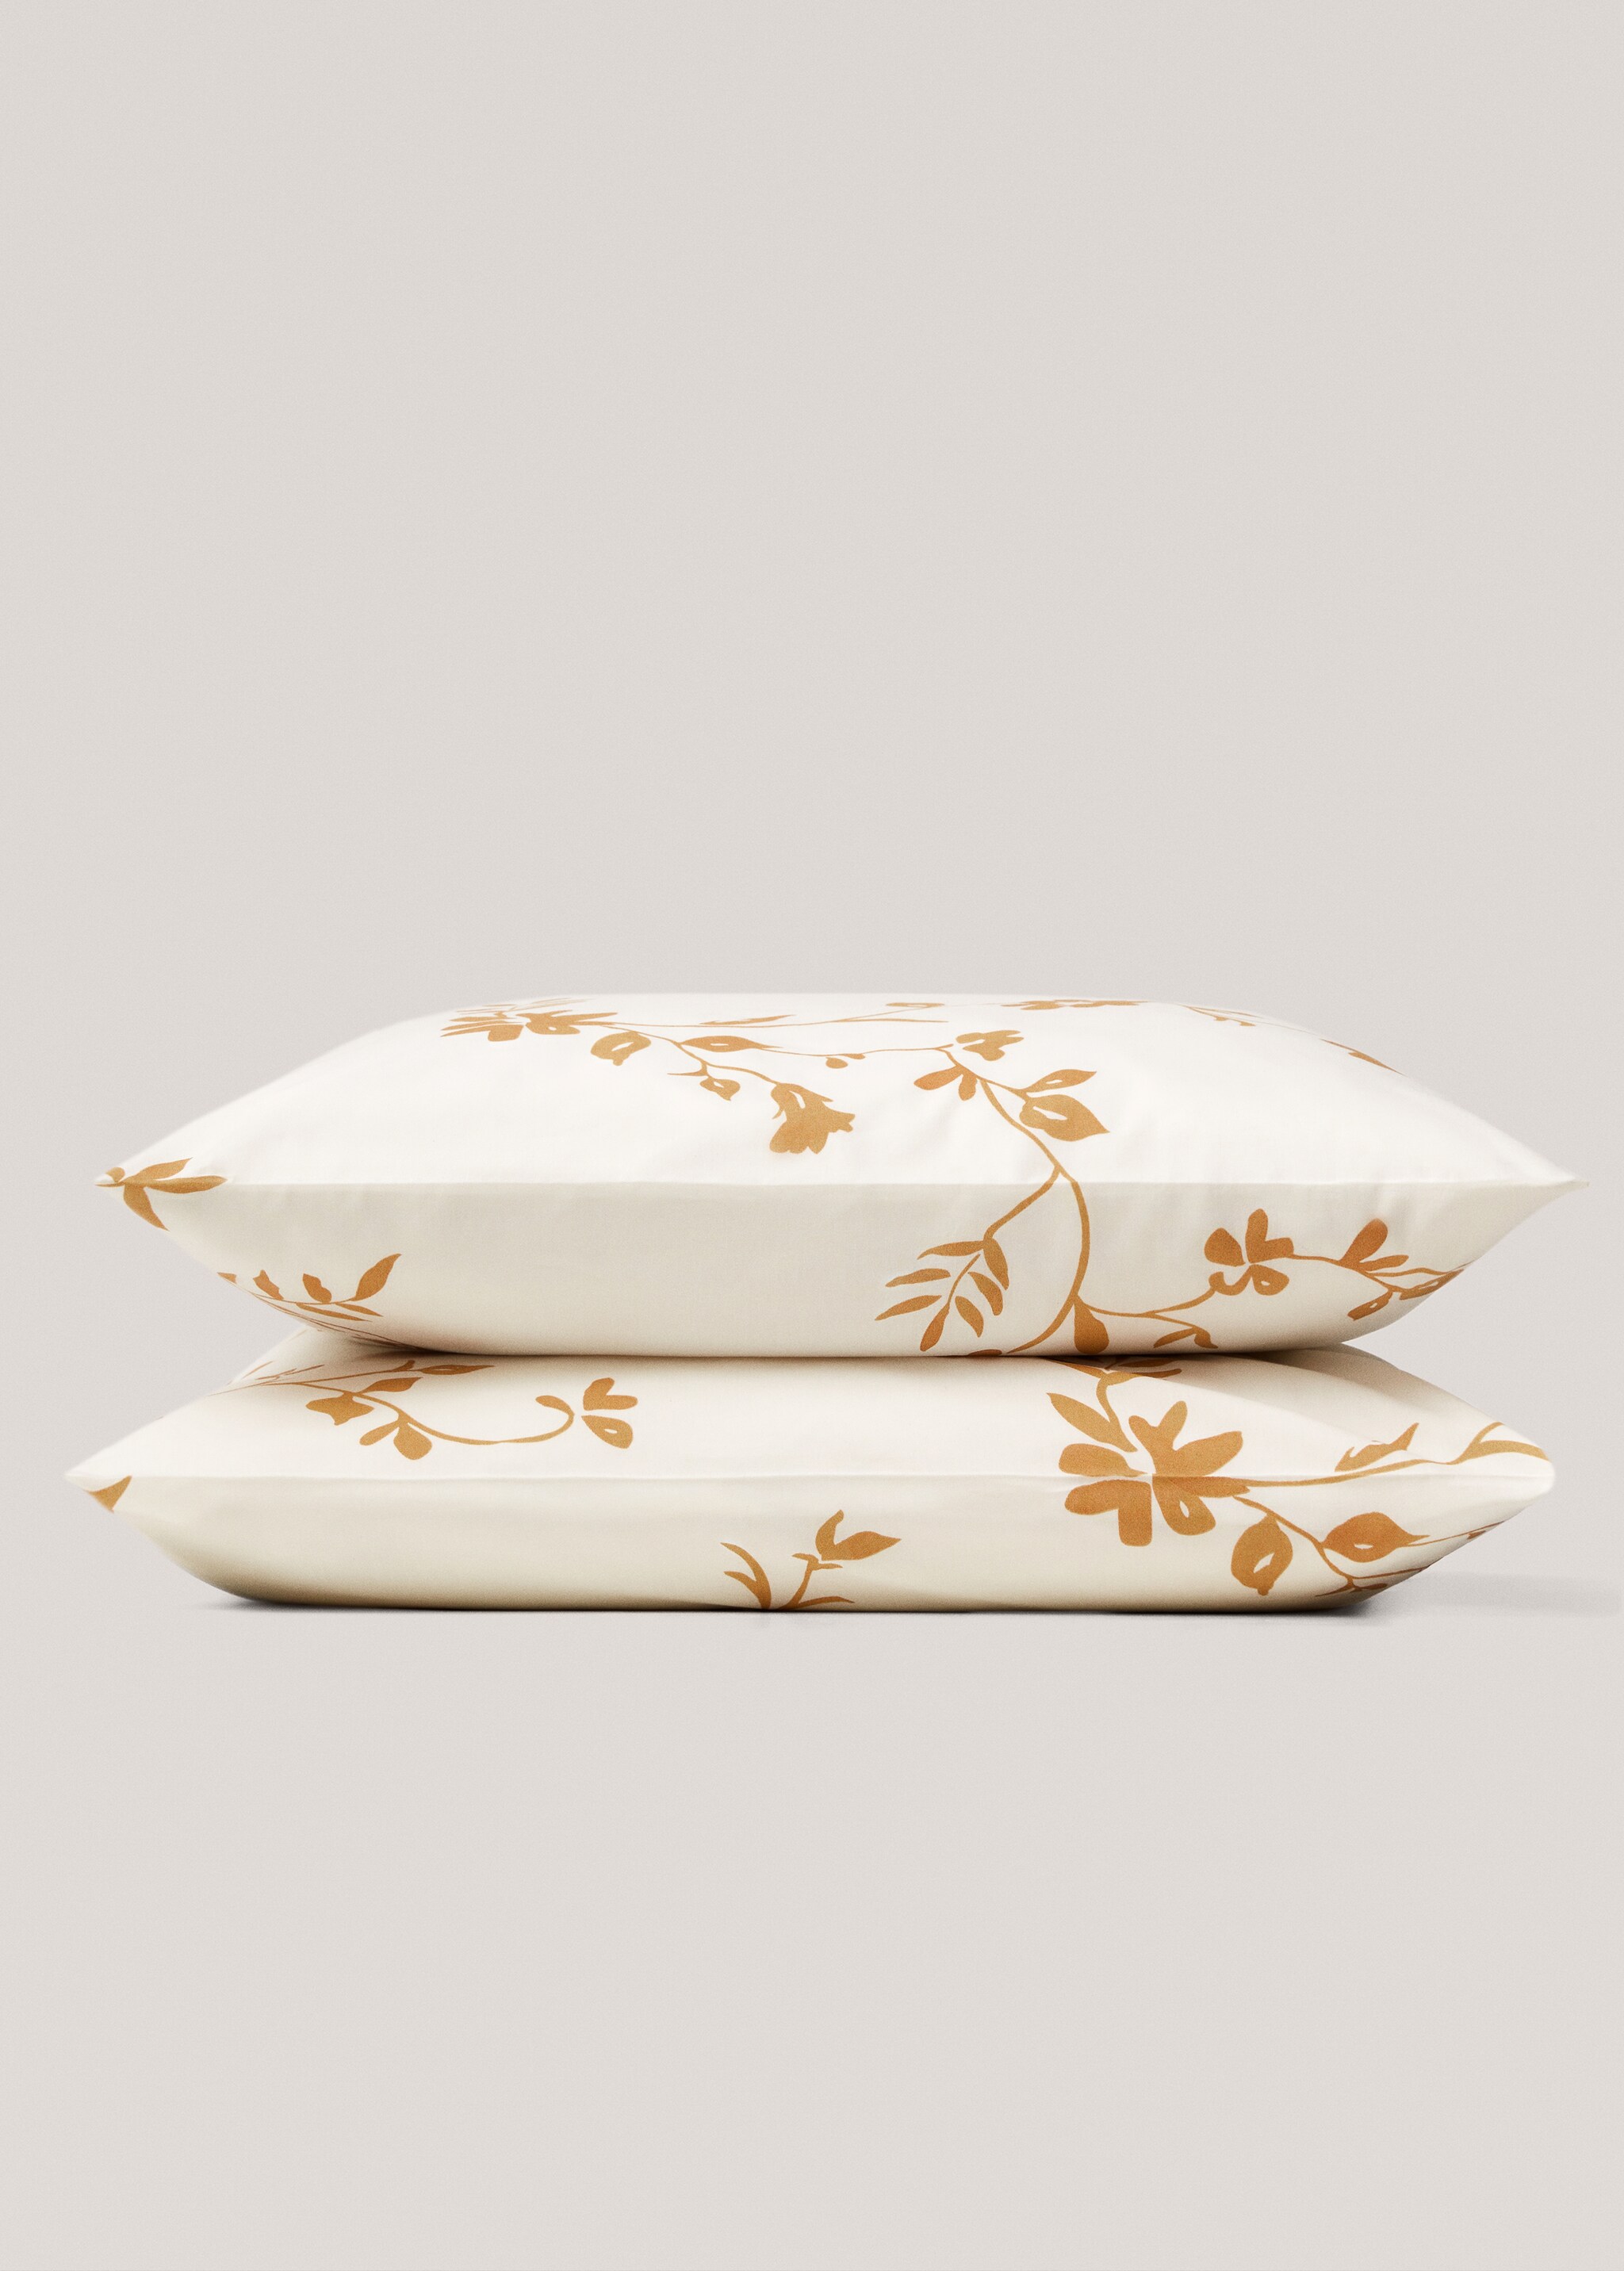 Cotton pillowcase with floral design 60x60cm - Szczegóły artykułu 1